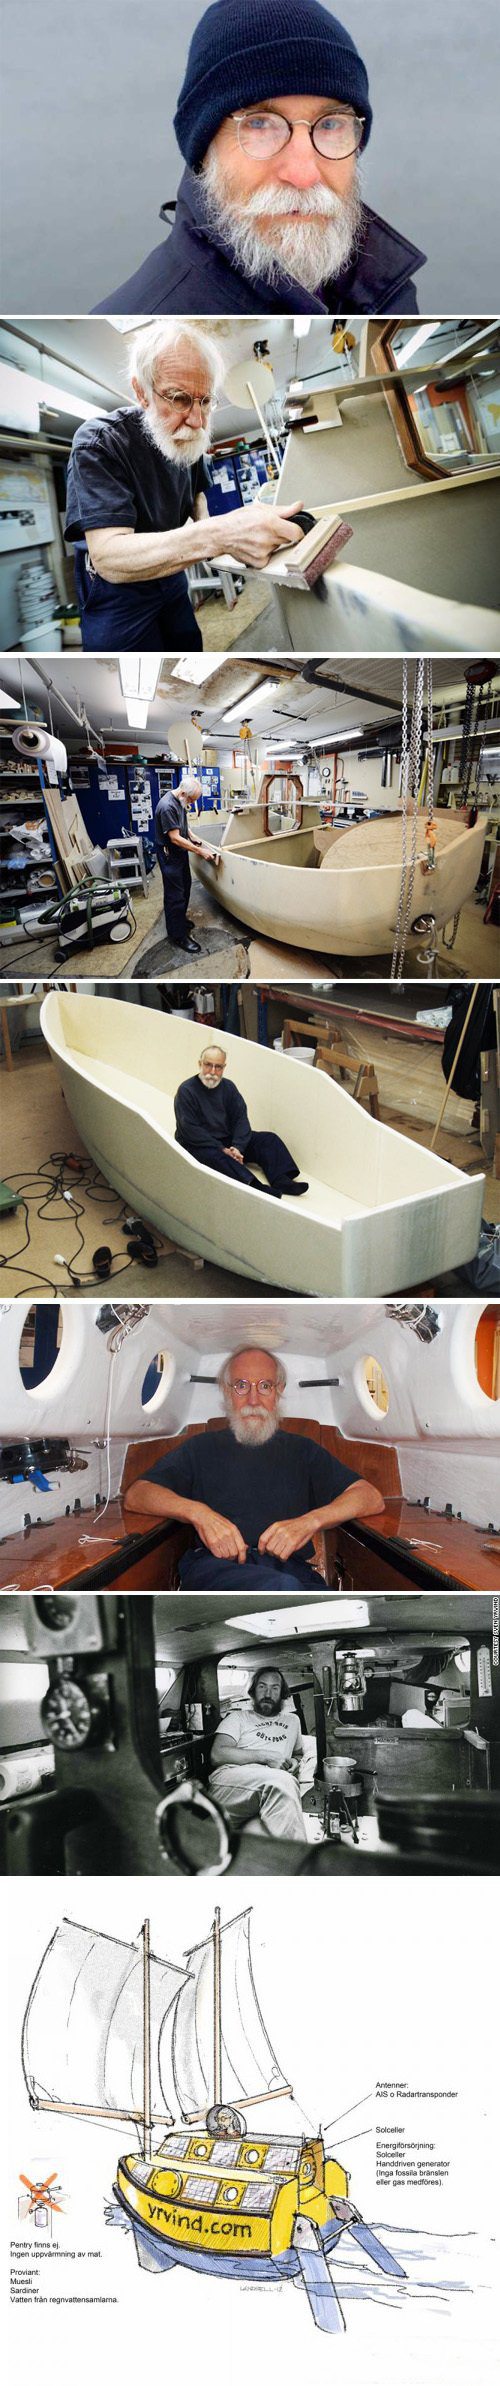 73岁大叔自制浴缸船环游世界《荷鲁斯游艇》